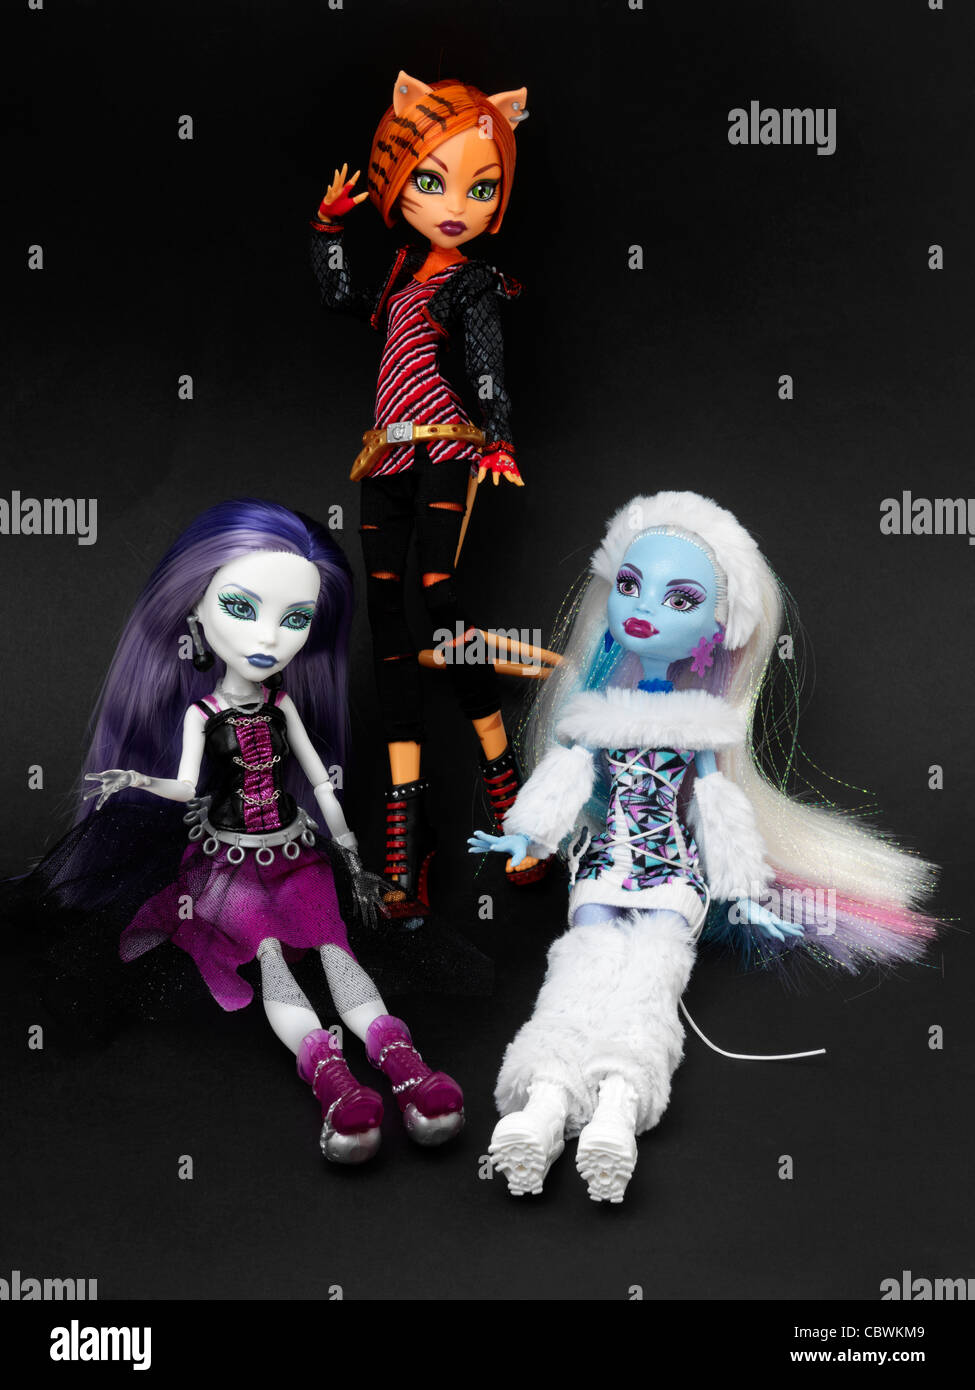 Monster High Puppen Spectra Vondergeist Tochter eines Geistes, Toralei  Tochter von einer Werkatze und Abbey Bominable Tochter von einem Yeti  Stockfotografie - Alamy